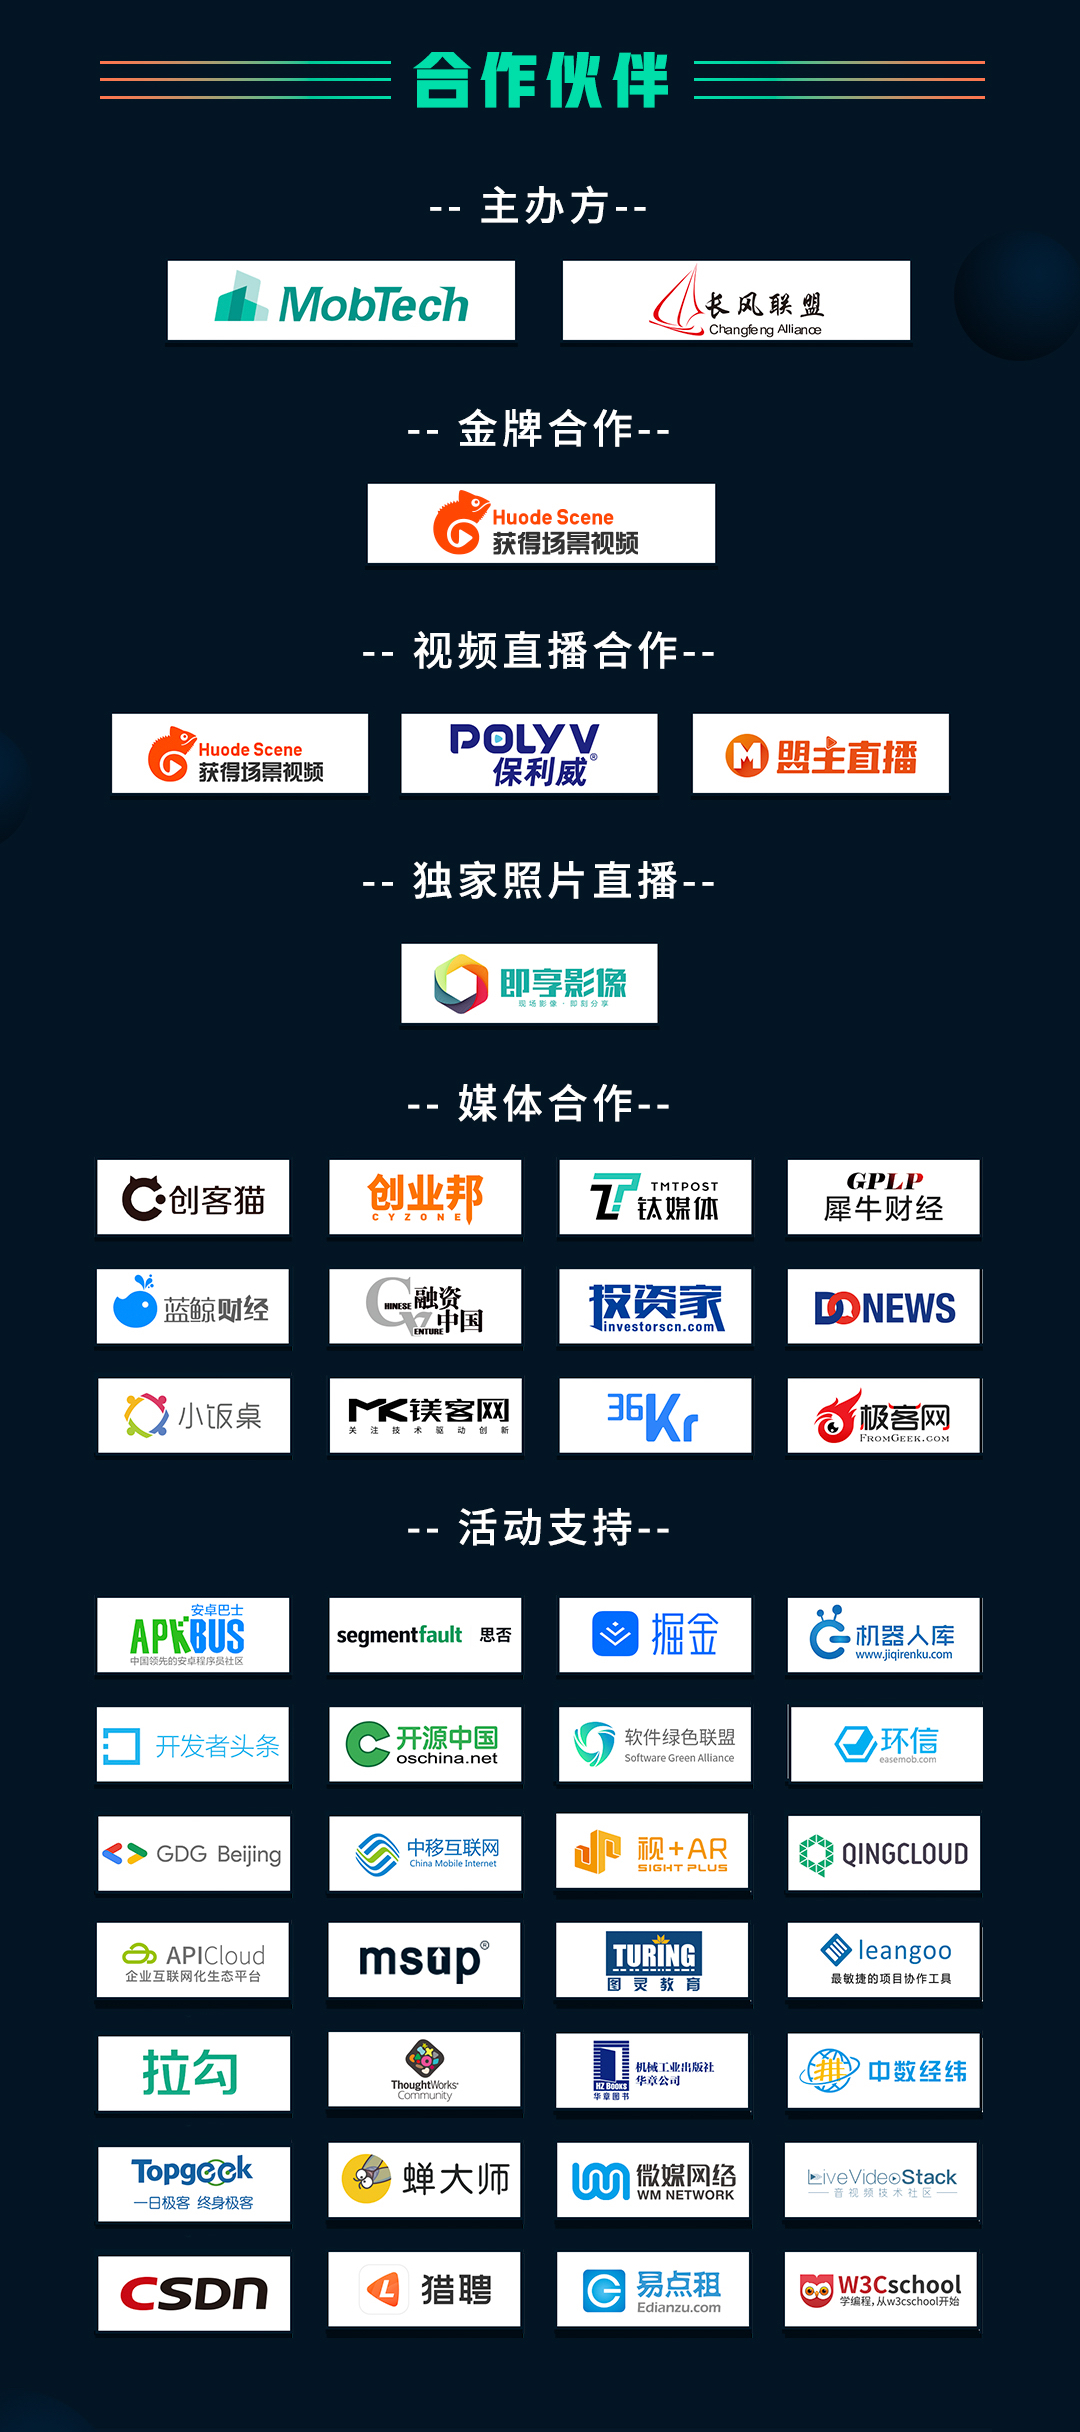  2019全球移动开发者技术峰会【技术人的能力变革】（北京）